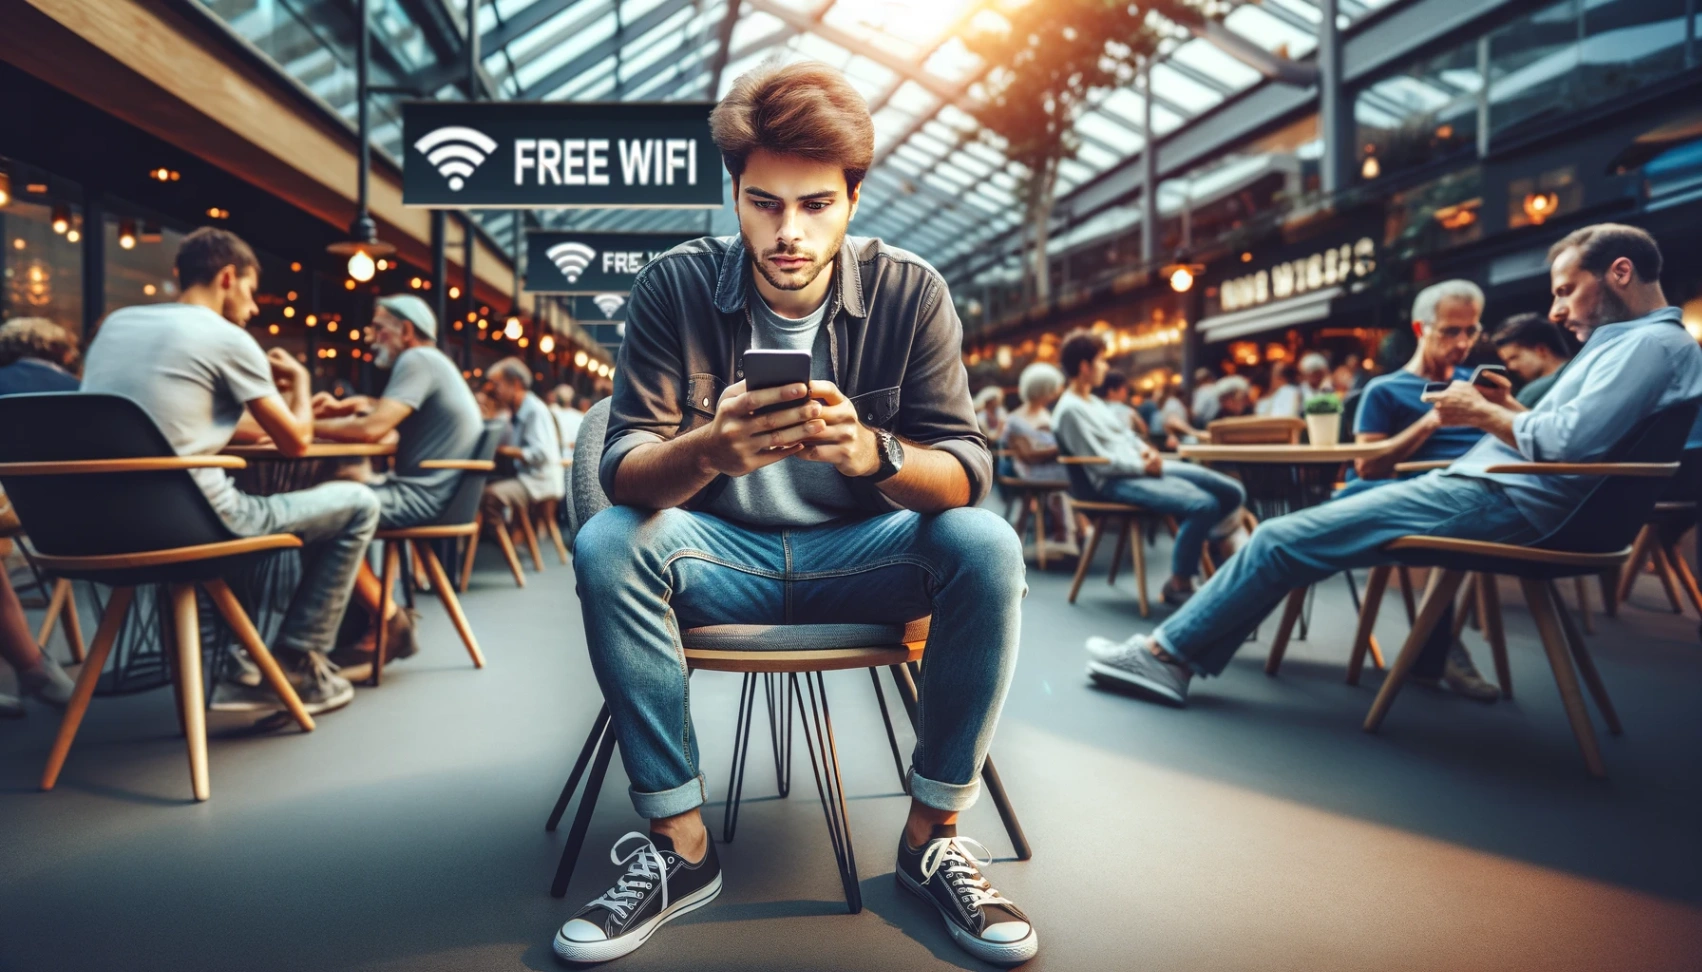 WiFi gratuito: Descubre la mejor aplicación para encontrarlo